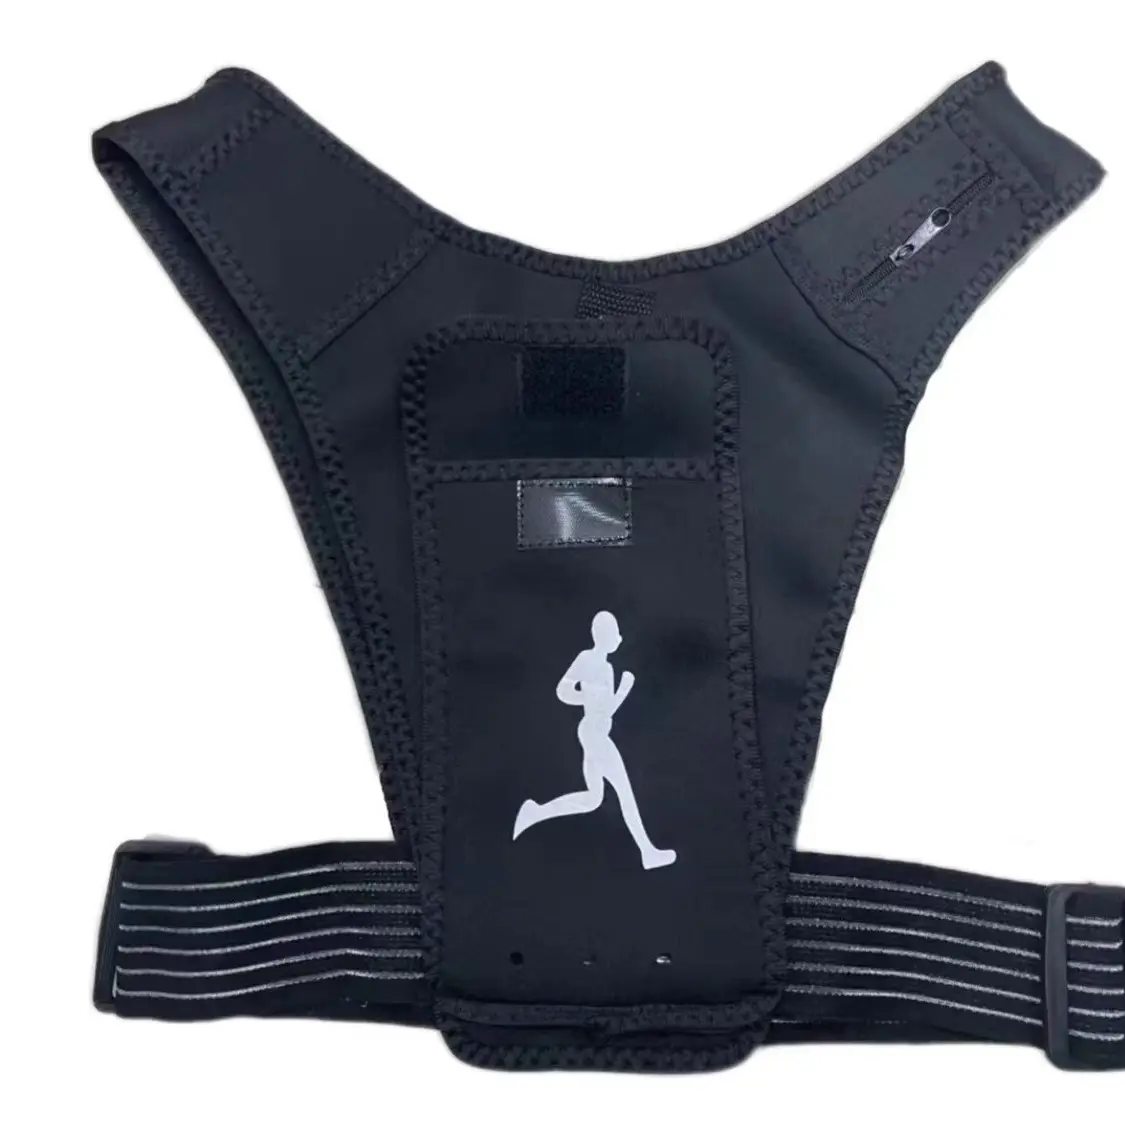 Koşu atleti telefon tutucu sırt çantası hafif spor yelek çanta erkek kadın Trail çanta spor bel çantası koşu için